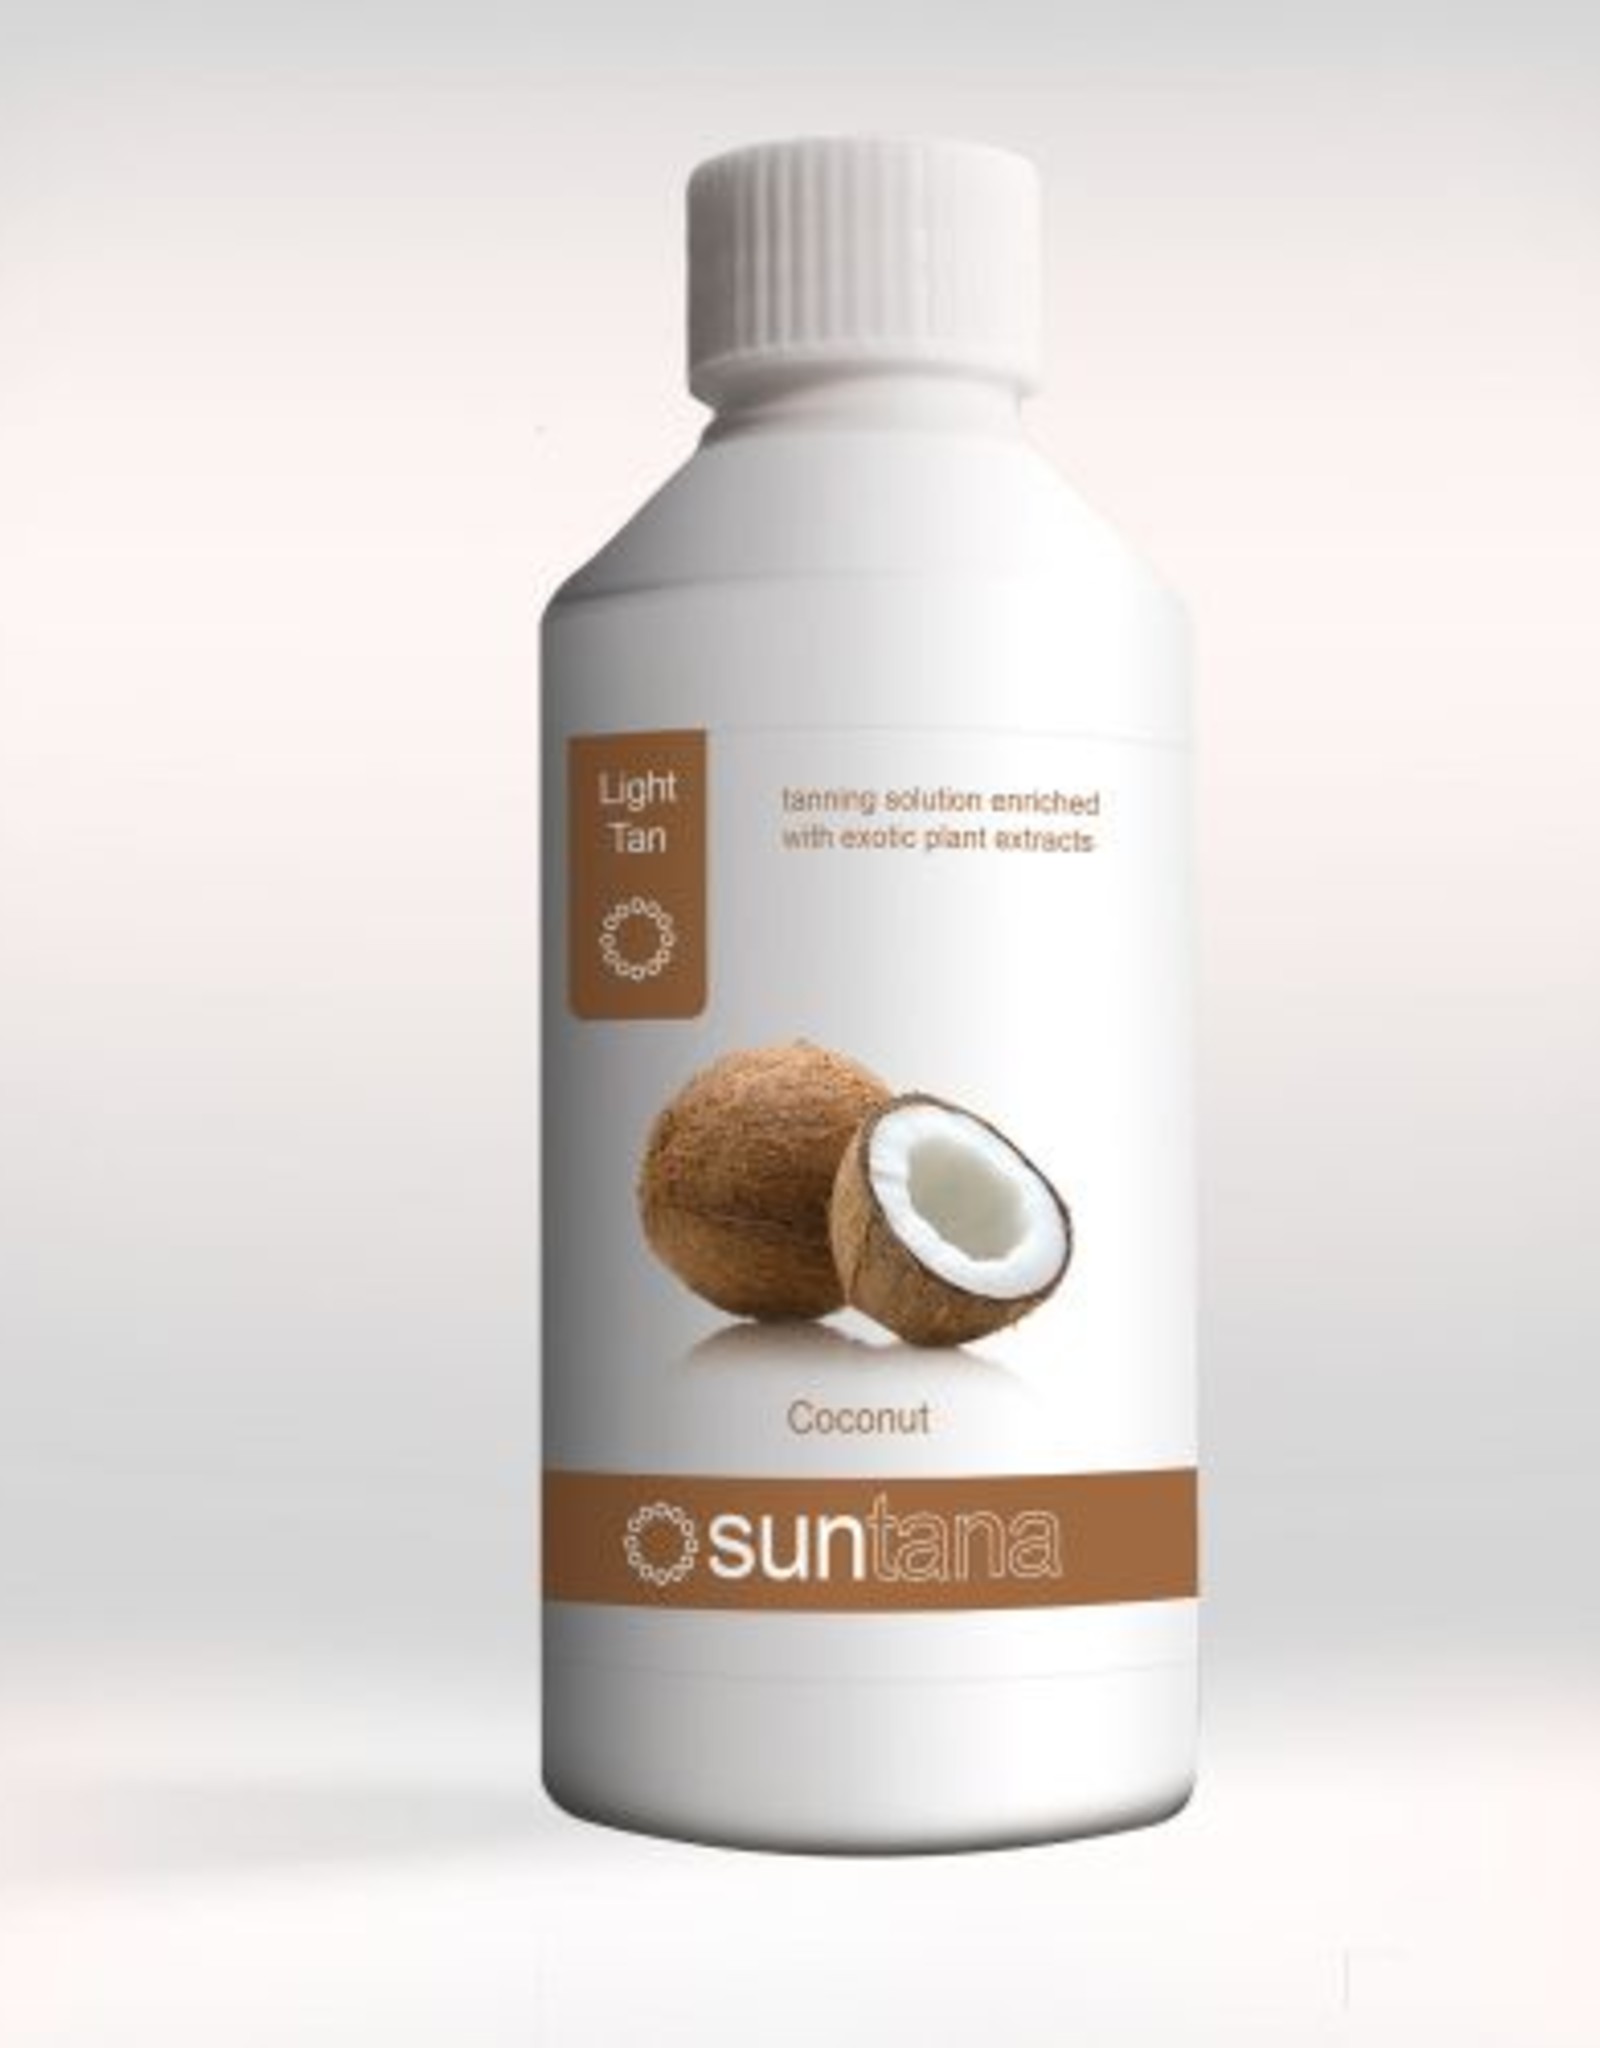 Suntana Suntana spray Tan sample